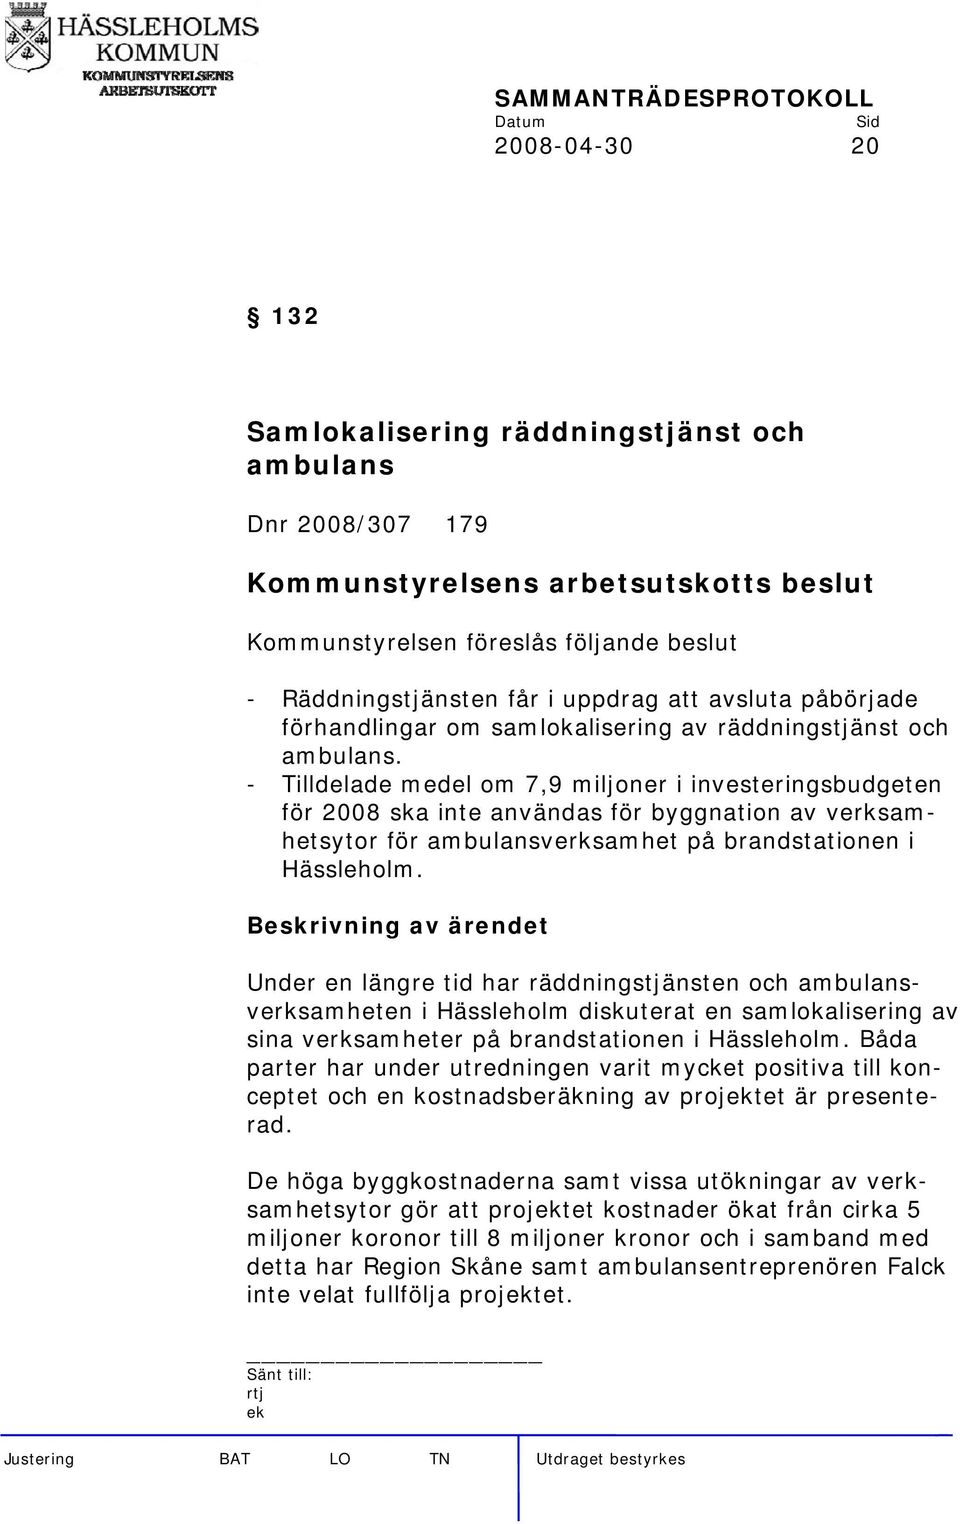 - Tilldelade medel om 7,9 miljoner i investeringsbudgeten för 2008 ska inte användas för byggnation av verksamhetsytor för ambulansverksamhet på brandstationen i Hässleholm.